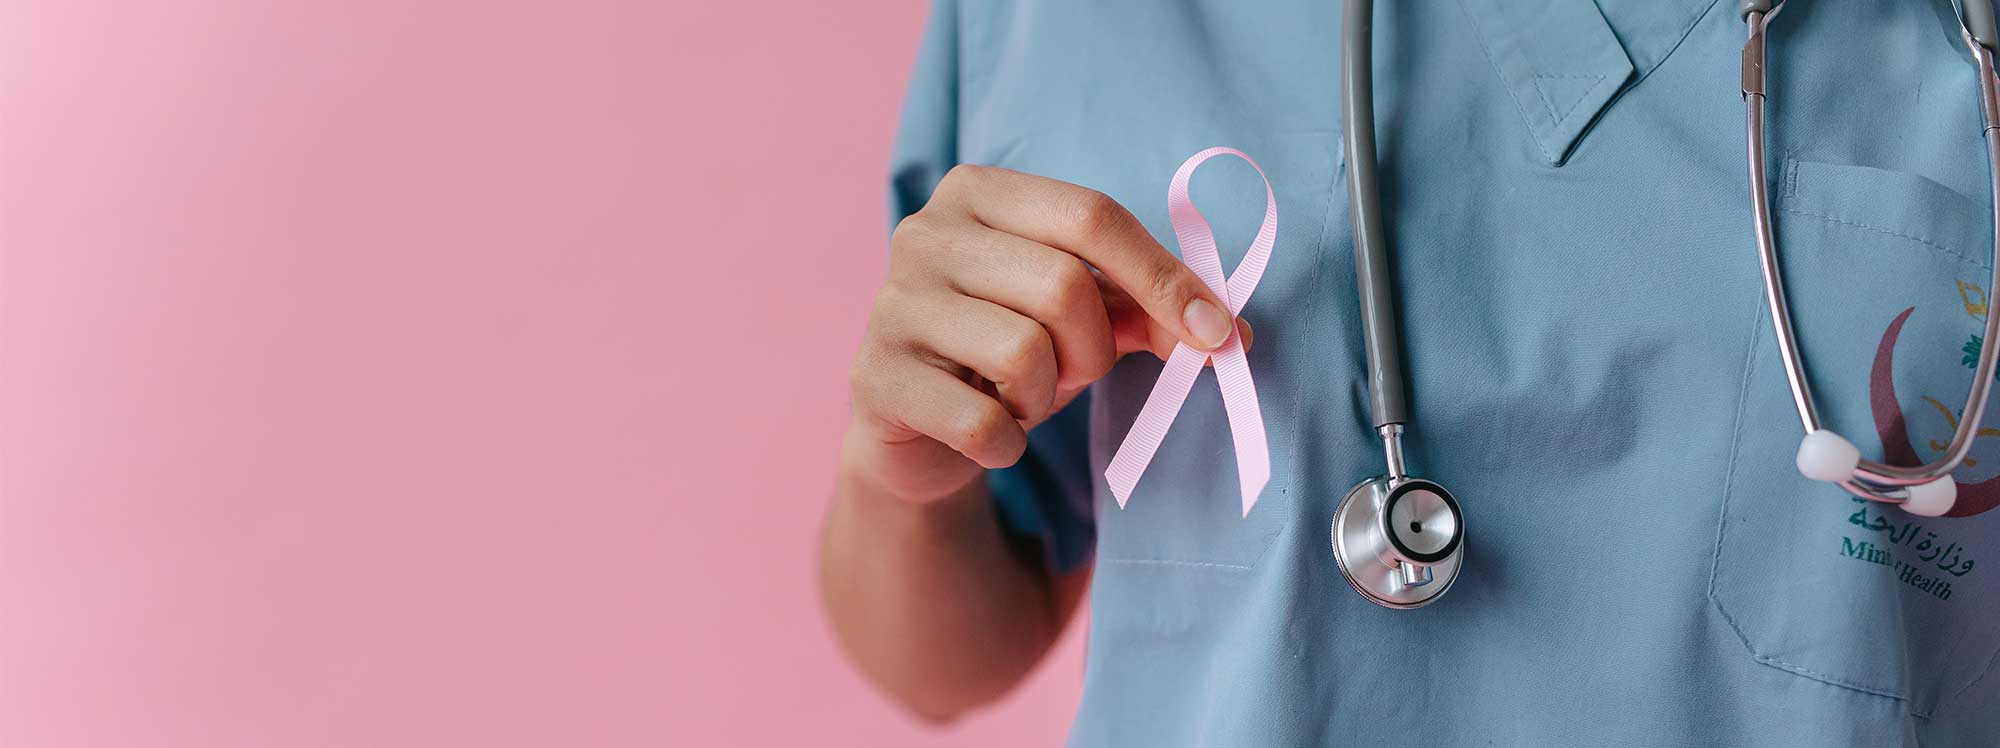 Campaña de concienciación sobre el cáncer de mama y ginecológico